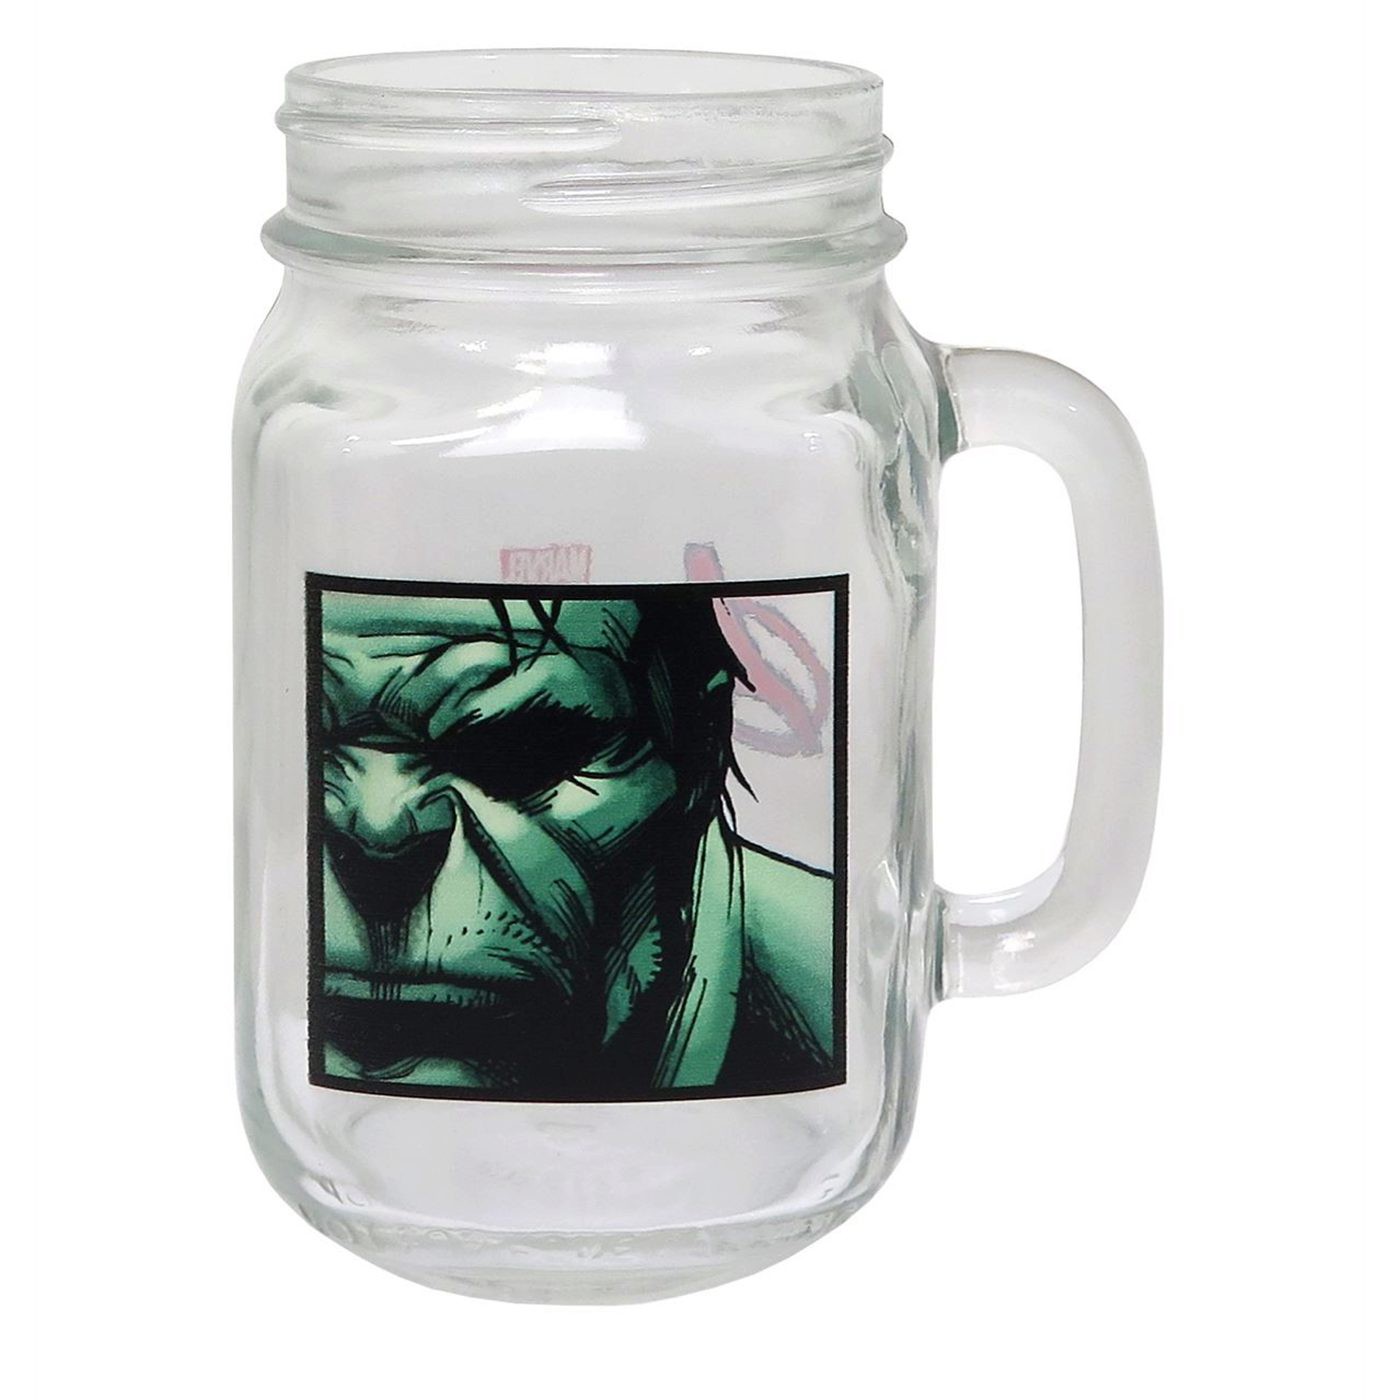 Hulk Close-Up Mason Jar Mug